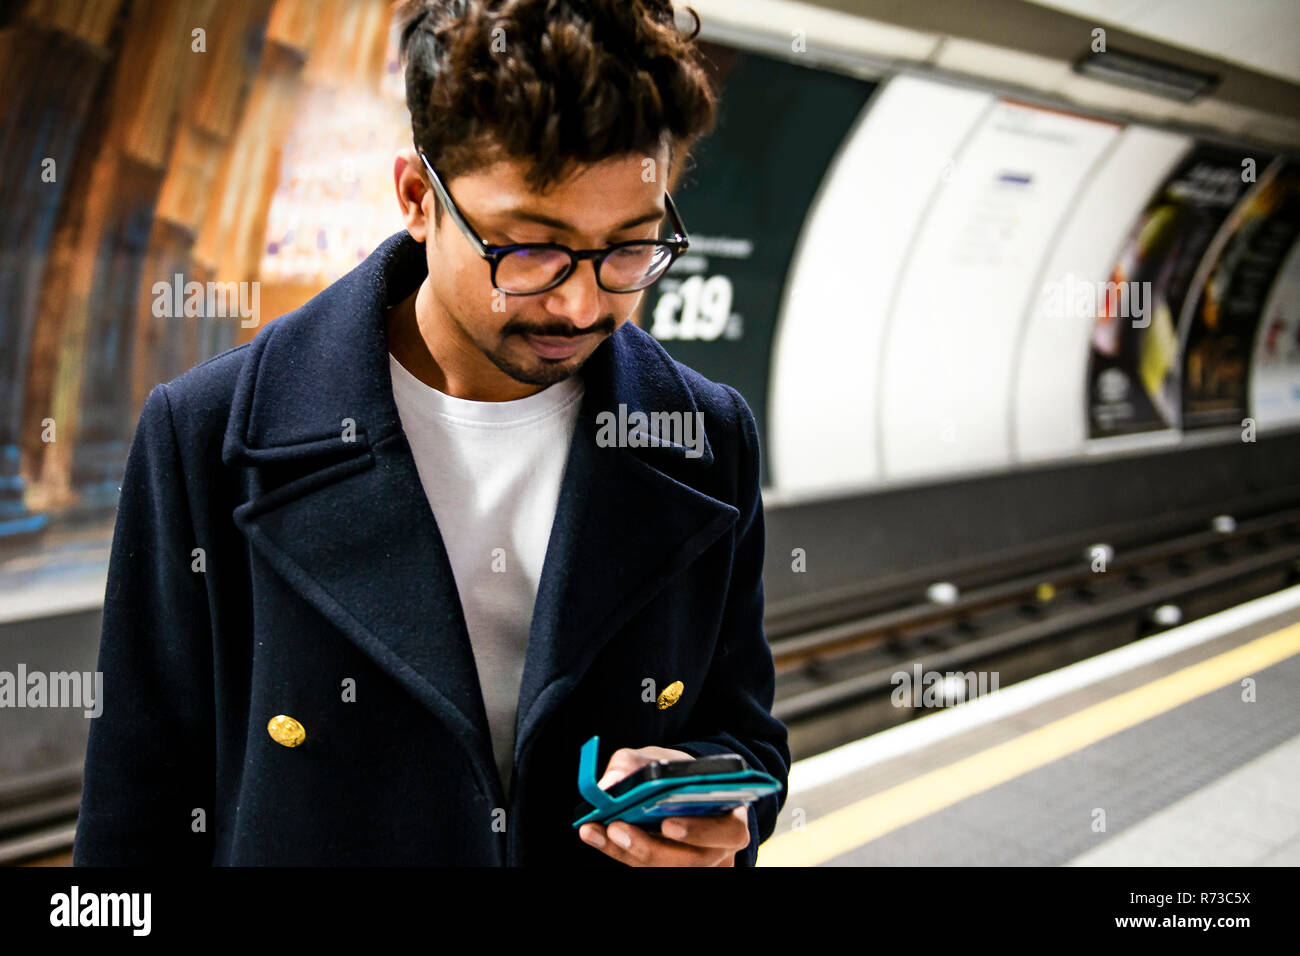 Businessman using smartphone on platform of subway station, London, UK Stock Photo